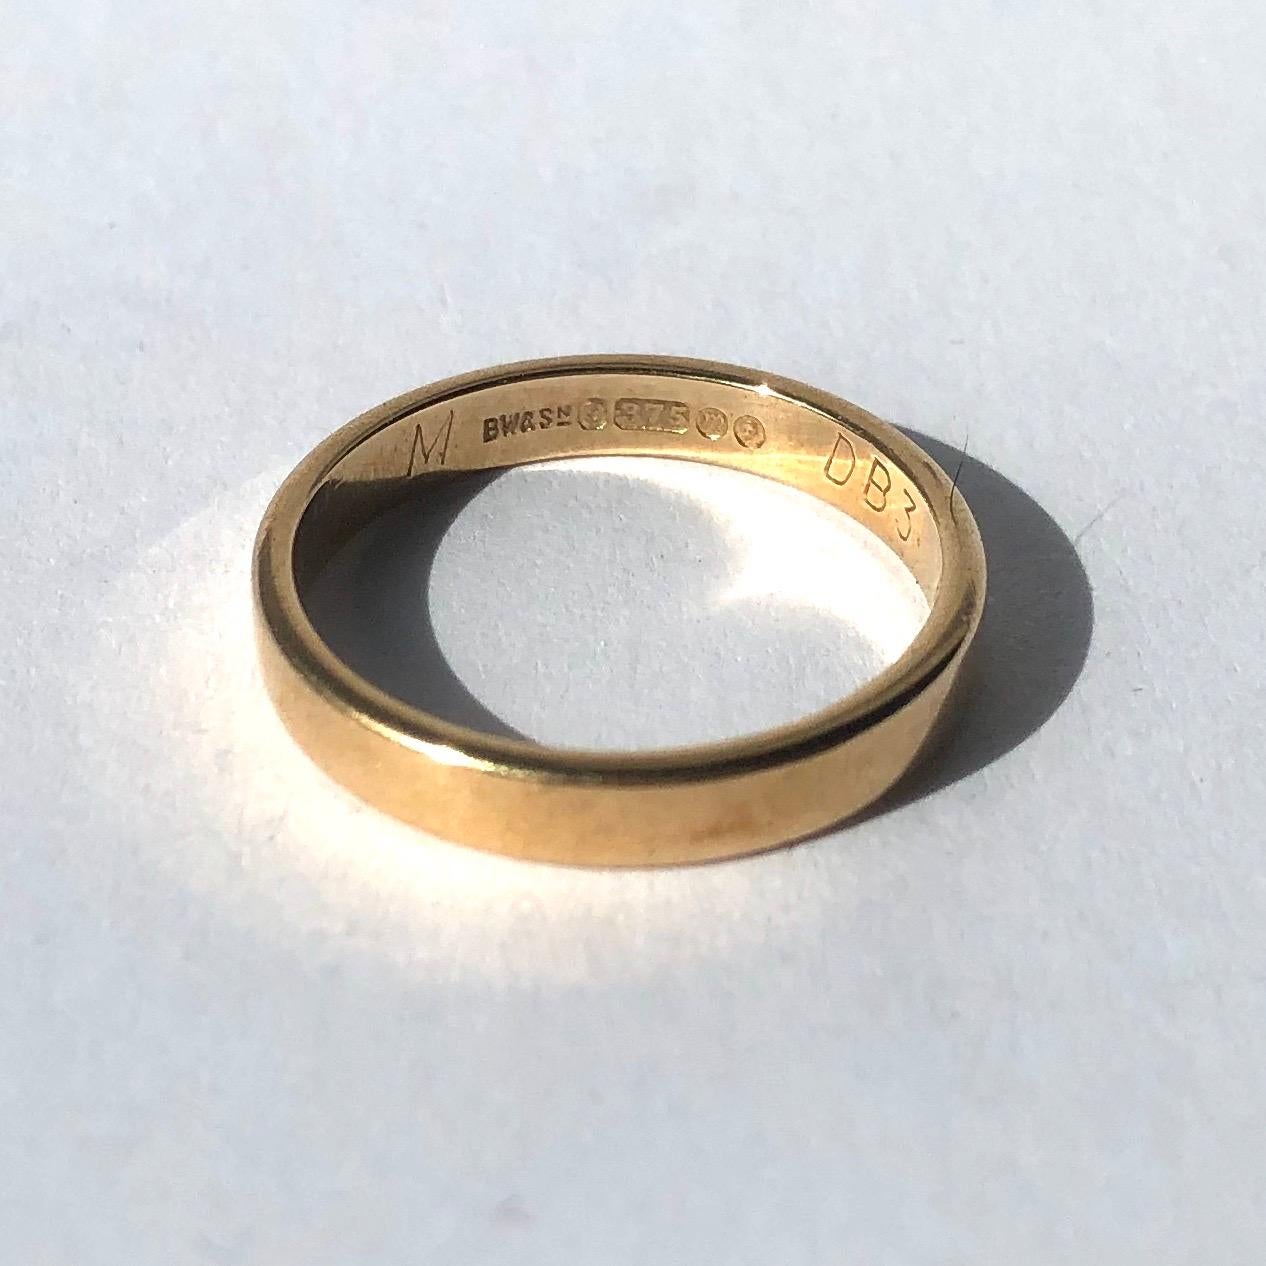 Ein Band aus 9-karätigem Gold ist der perfekte klassische Ehering oder ein großartiges Stück für den täglichen Gebrauch. 

Ring Größe: M 1/2 oder 6 1/2
Breite des Bandes: 2,5 mm 

Gewicht: 2,23g